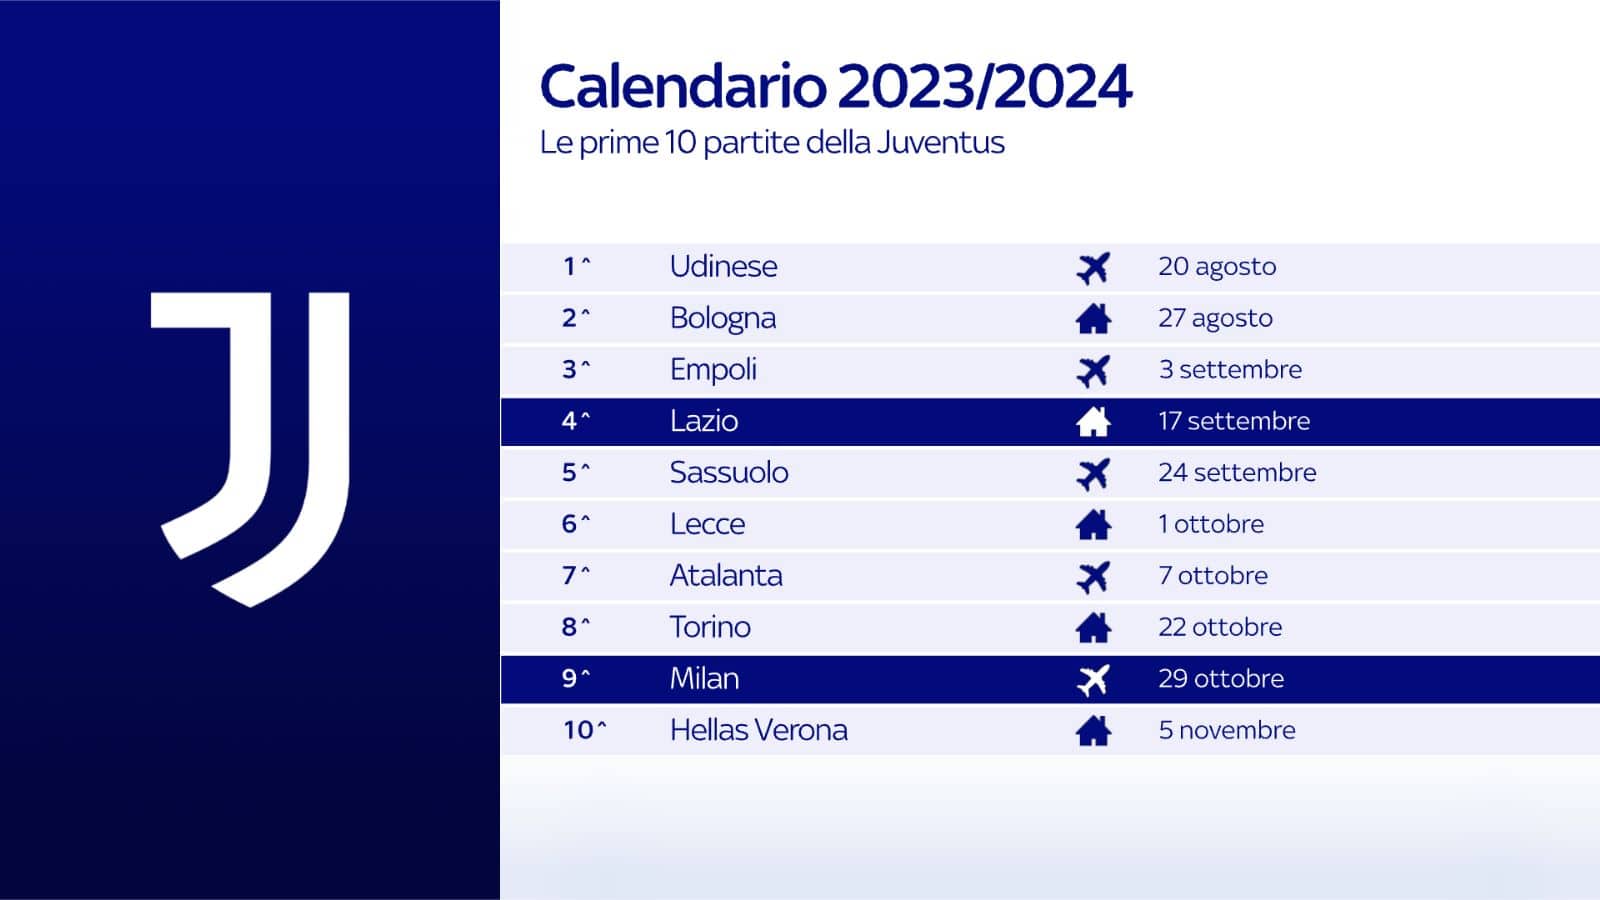 Juve, al via la Serie A 2023-24: UFFICIALE il calendario, i bianconeri  partono a Udine. Ecco tutte le giornate